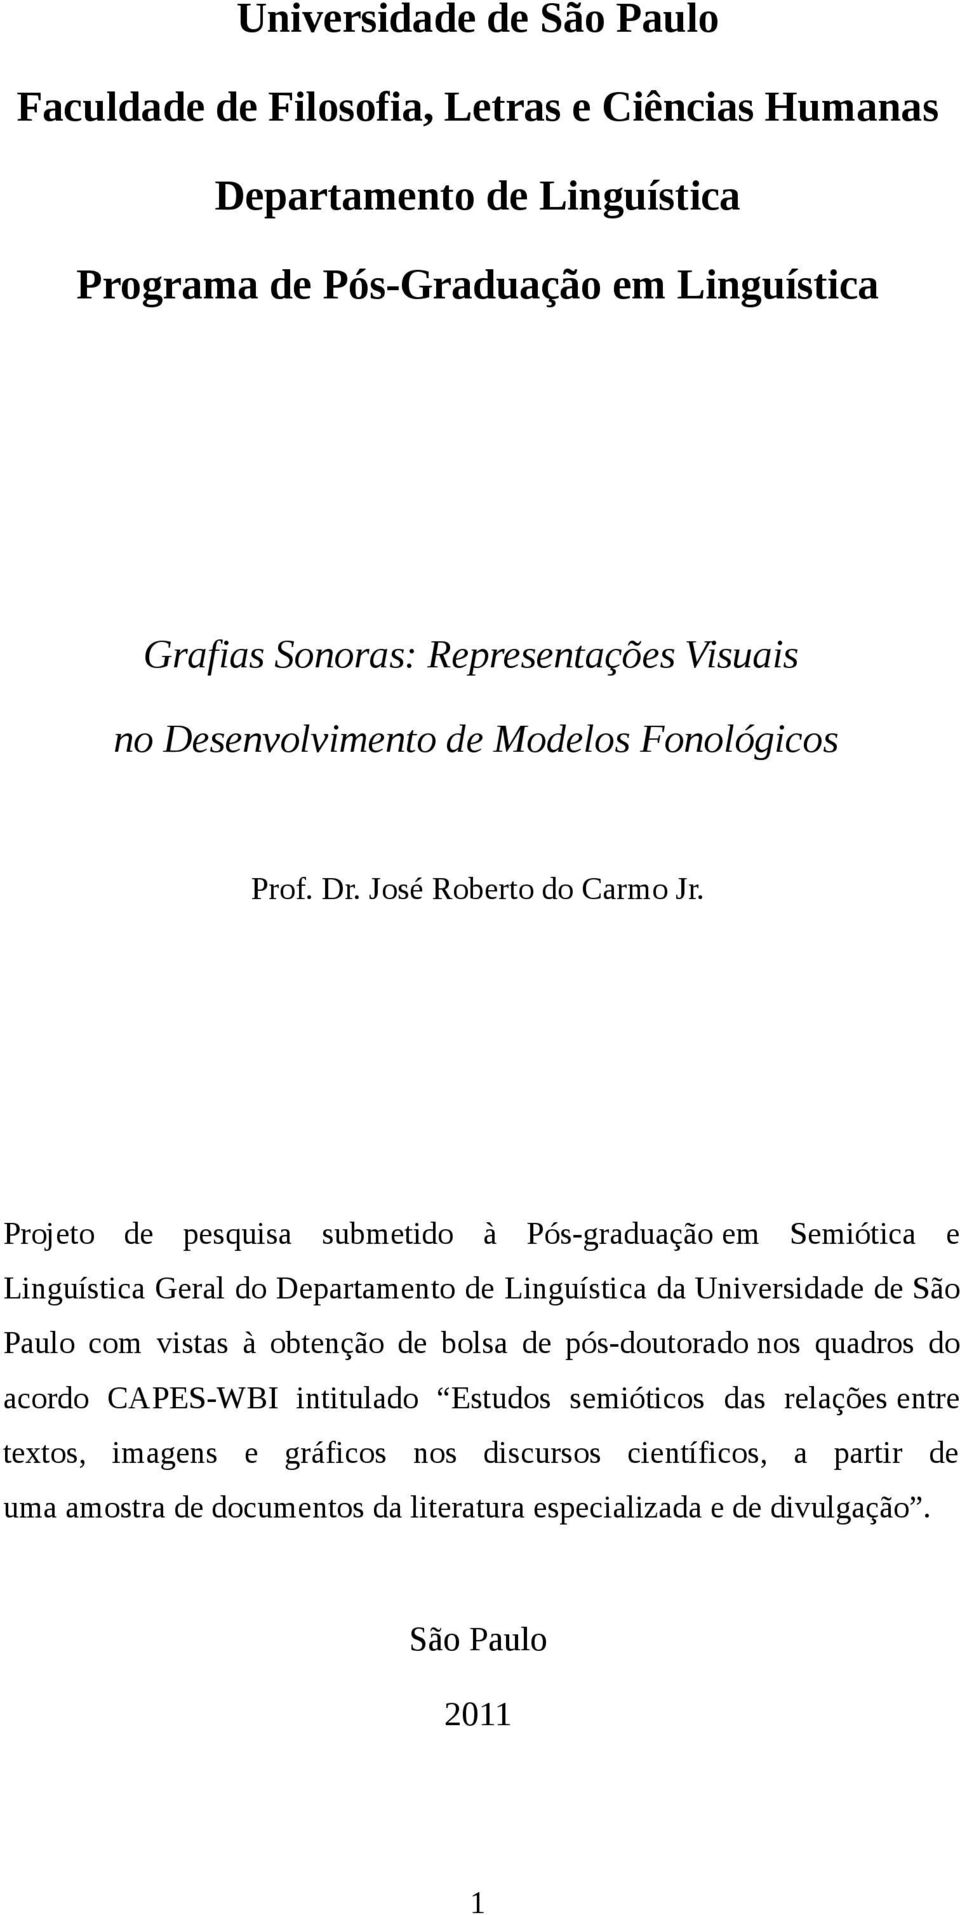 Projeto de pesquisa submetido à Pós-graduação em Semiótica e Linguística Geral do Departamento de Linguística da Universidade de São Paulo com vistas à obtenção de bolsa